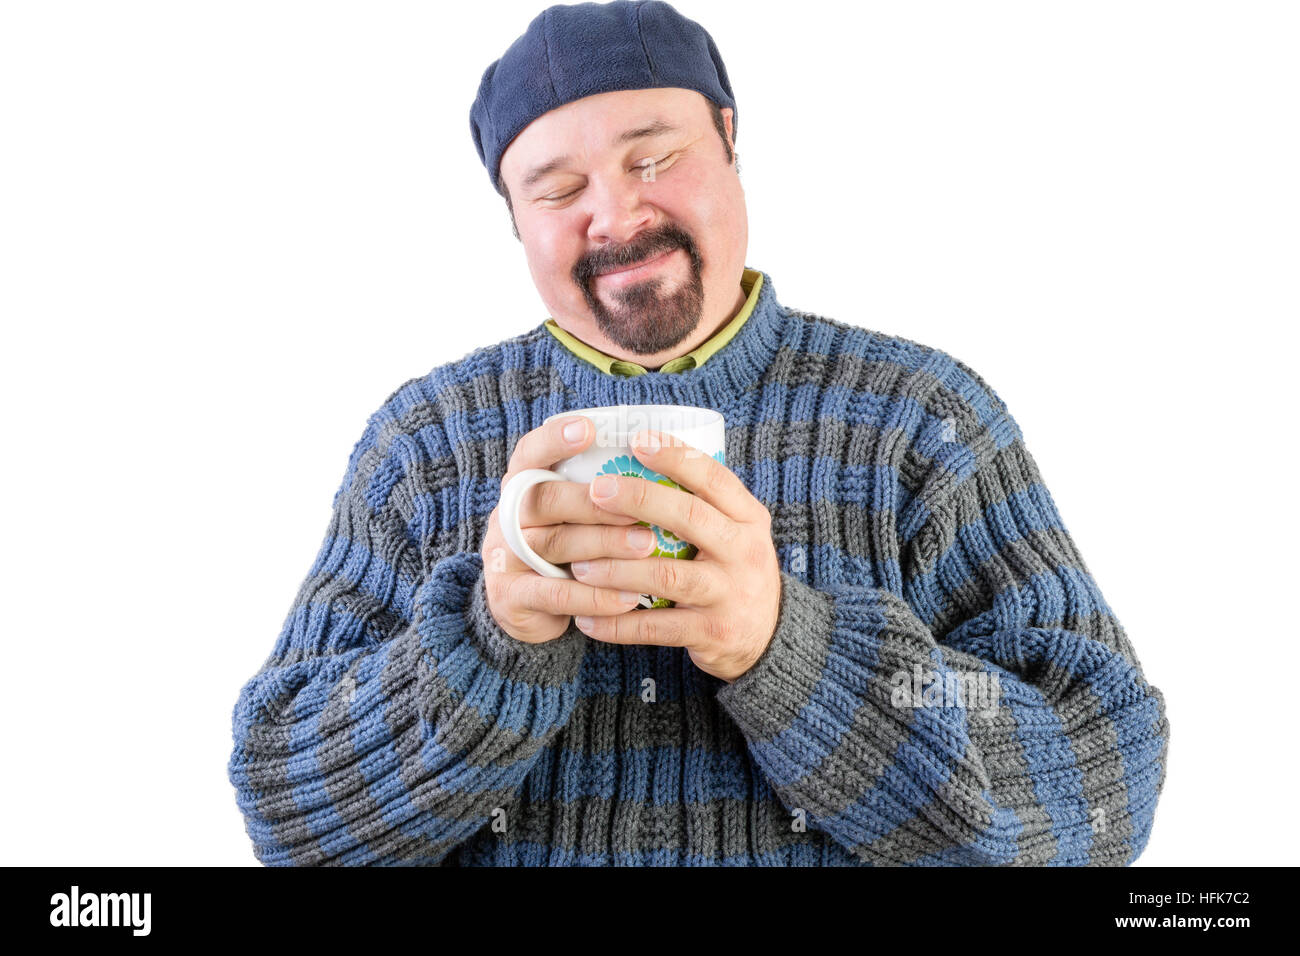 Moitié du corps, portrait d'homme heureux en pull bleu avec boisson chaude sur blanc Banque D'Images